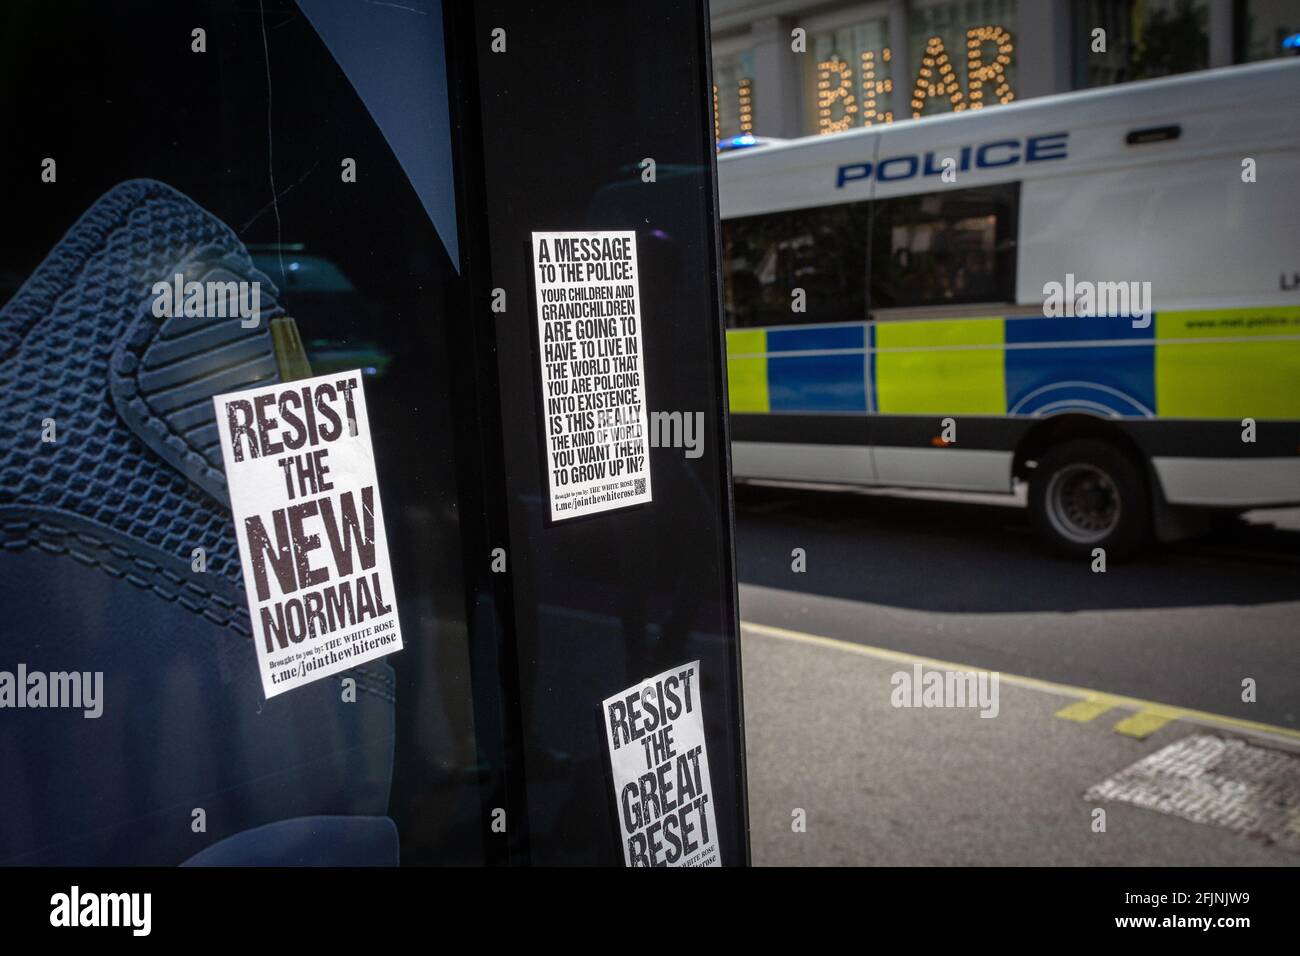 24. April 2021, London, England, Vereinigtes Königreich: Bushaltestelle mit Aufklebern und Polizeiwagen, der während eines Anti-Lockdown-Protests in London vorbeifährt. Stockfoto